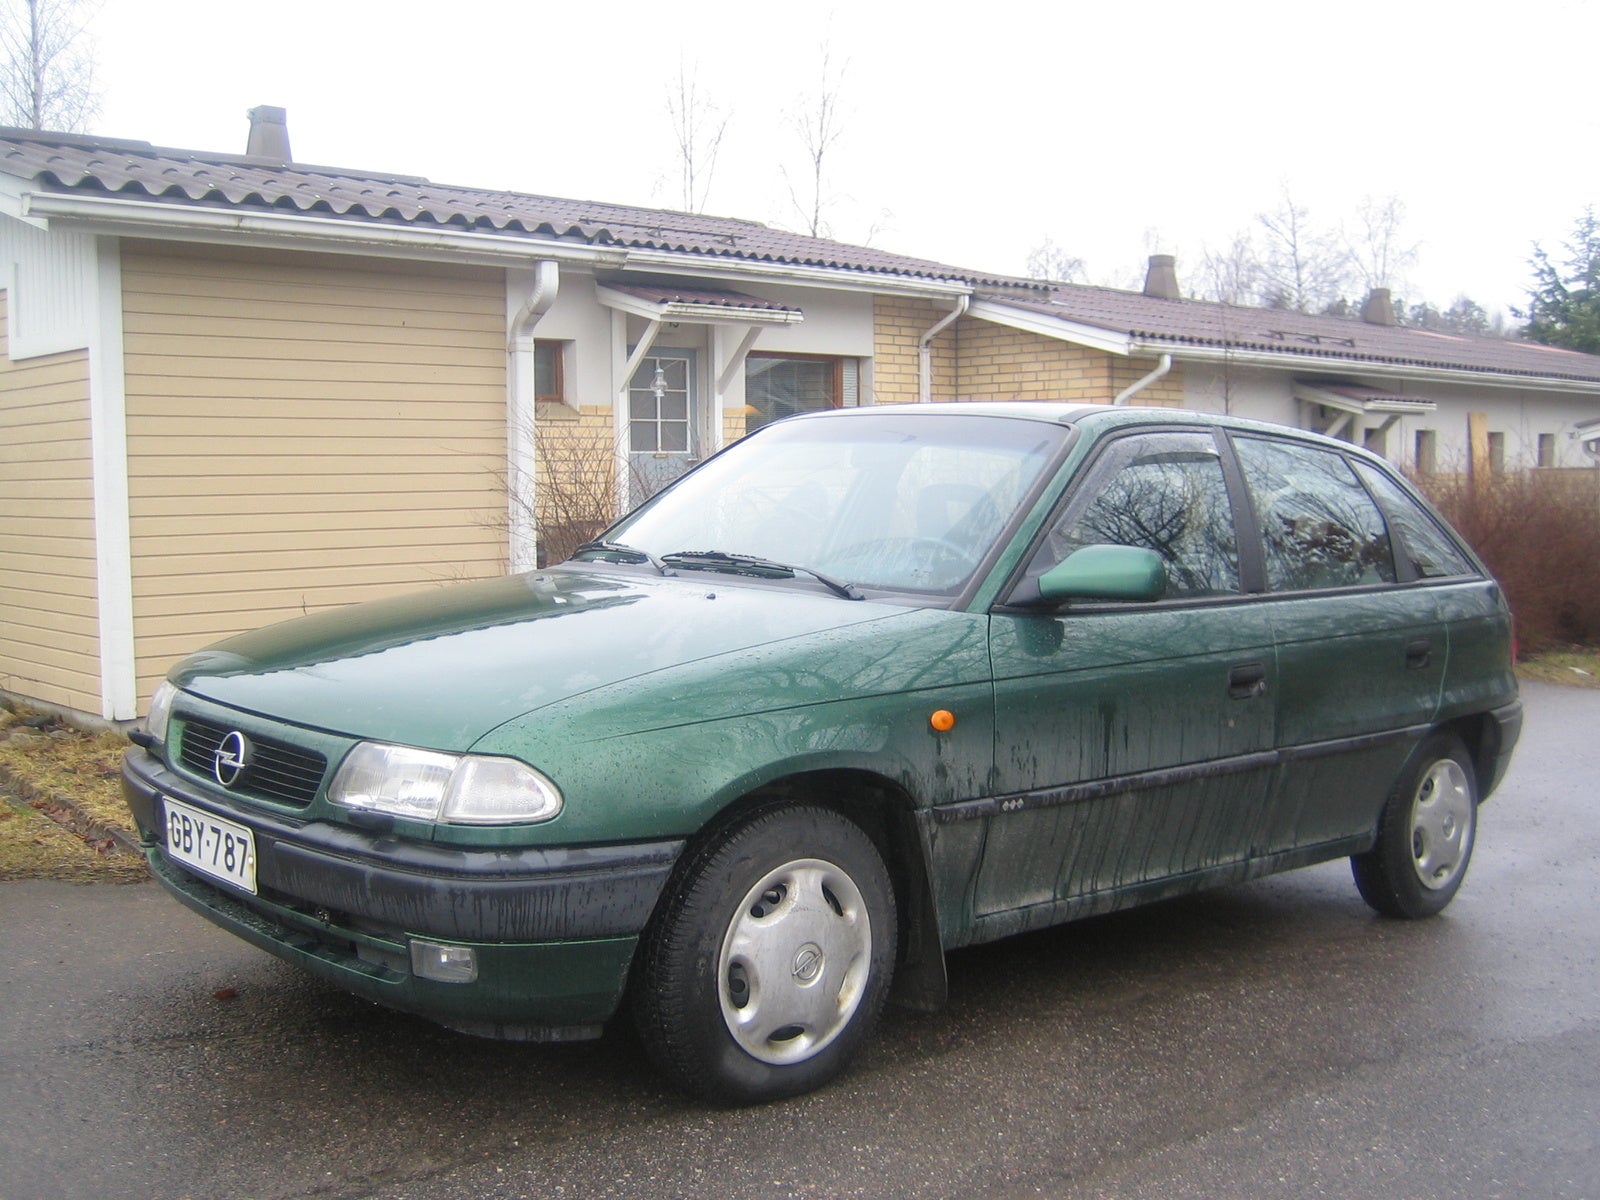 Opel Astra 1996. Opel Astra f 1996. Opel Astra f хэтчбек 1996. От 1 июля 1996 г